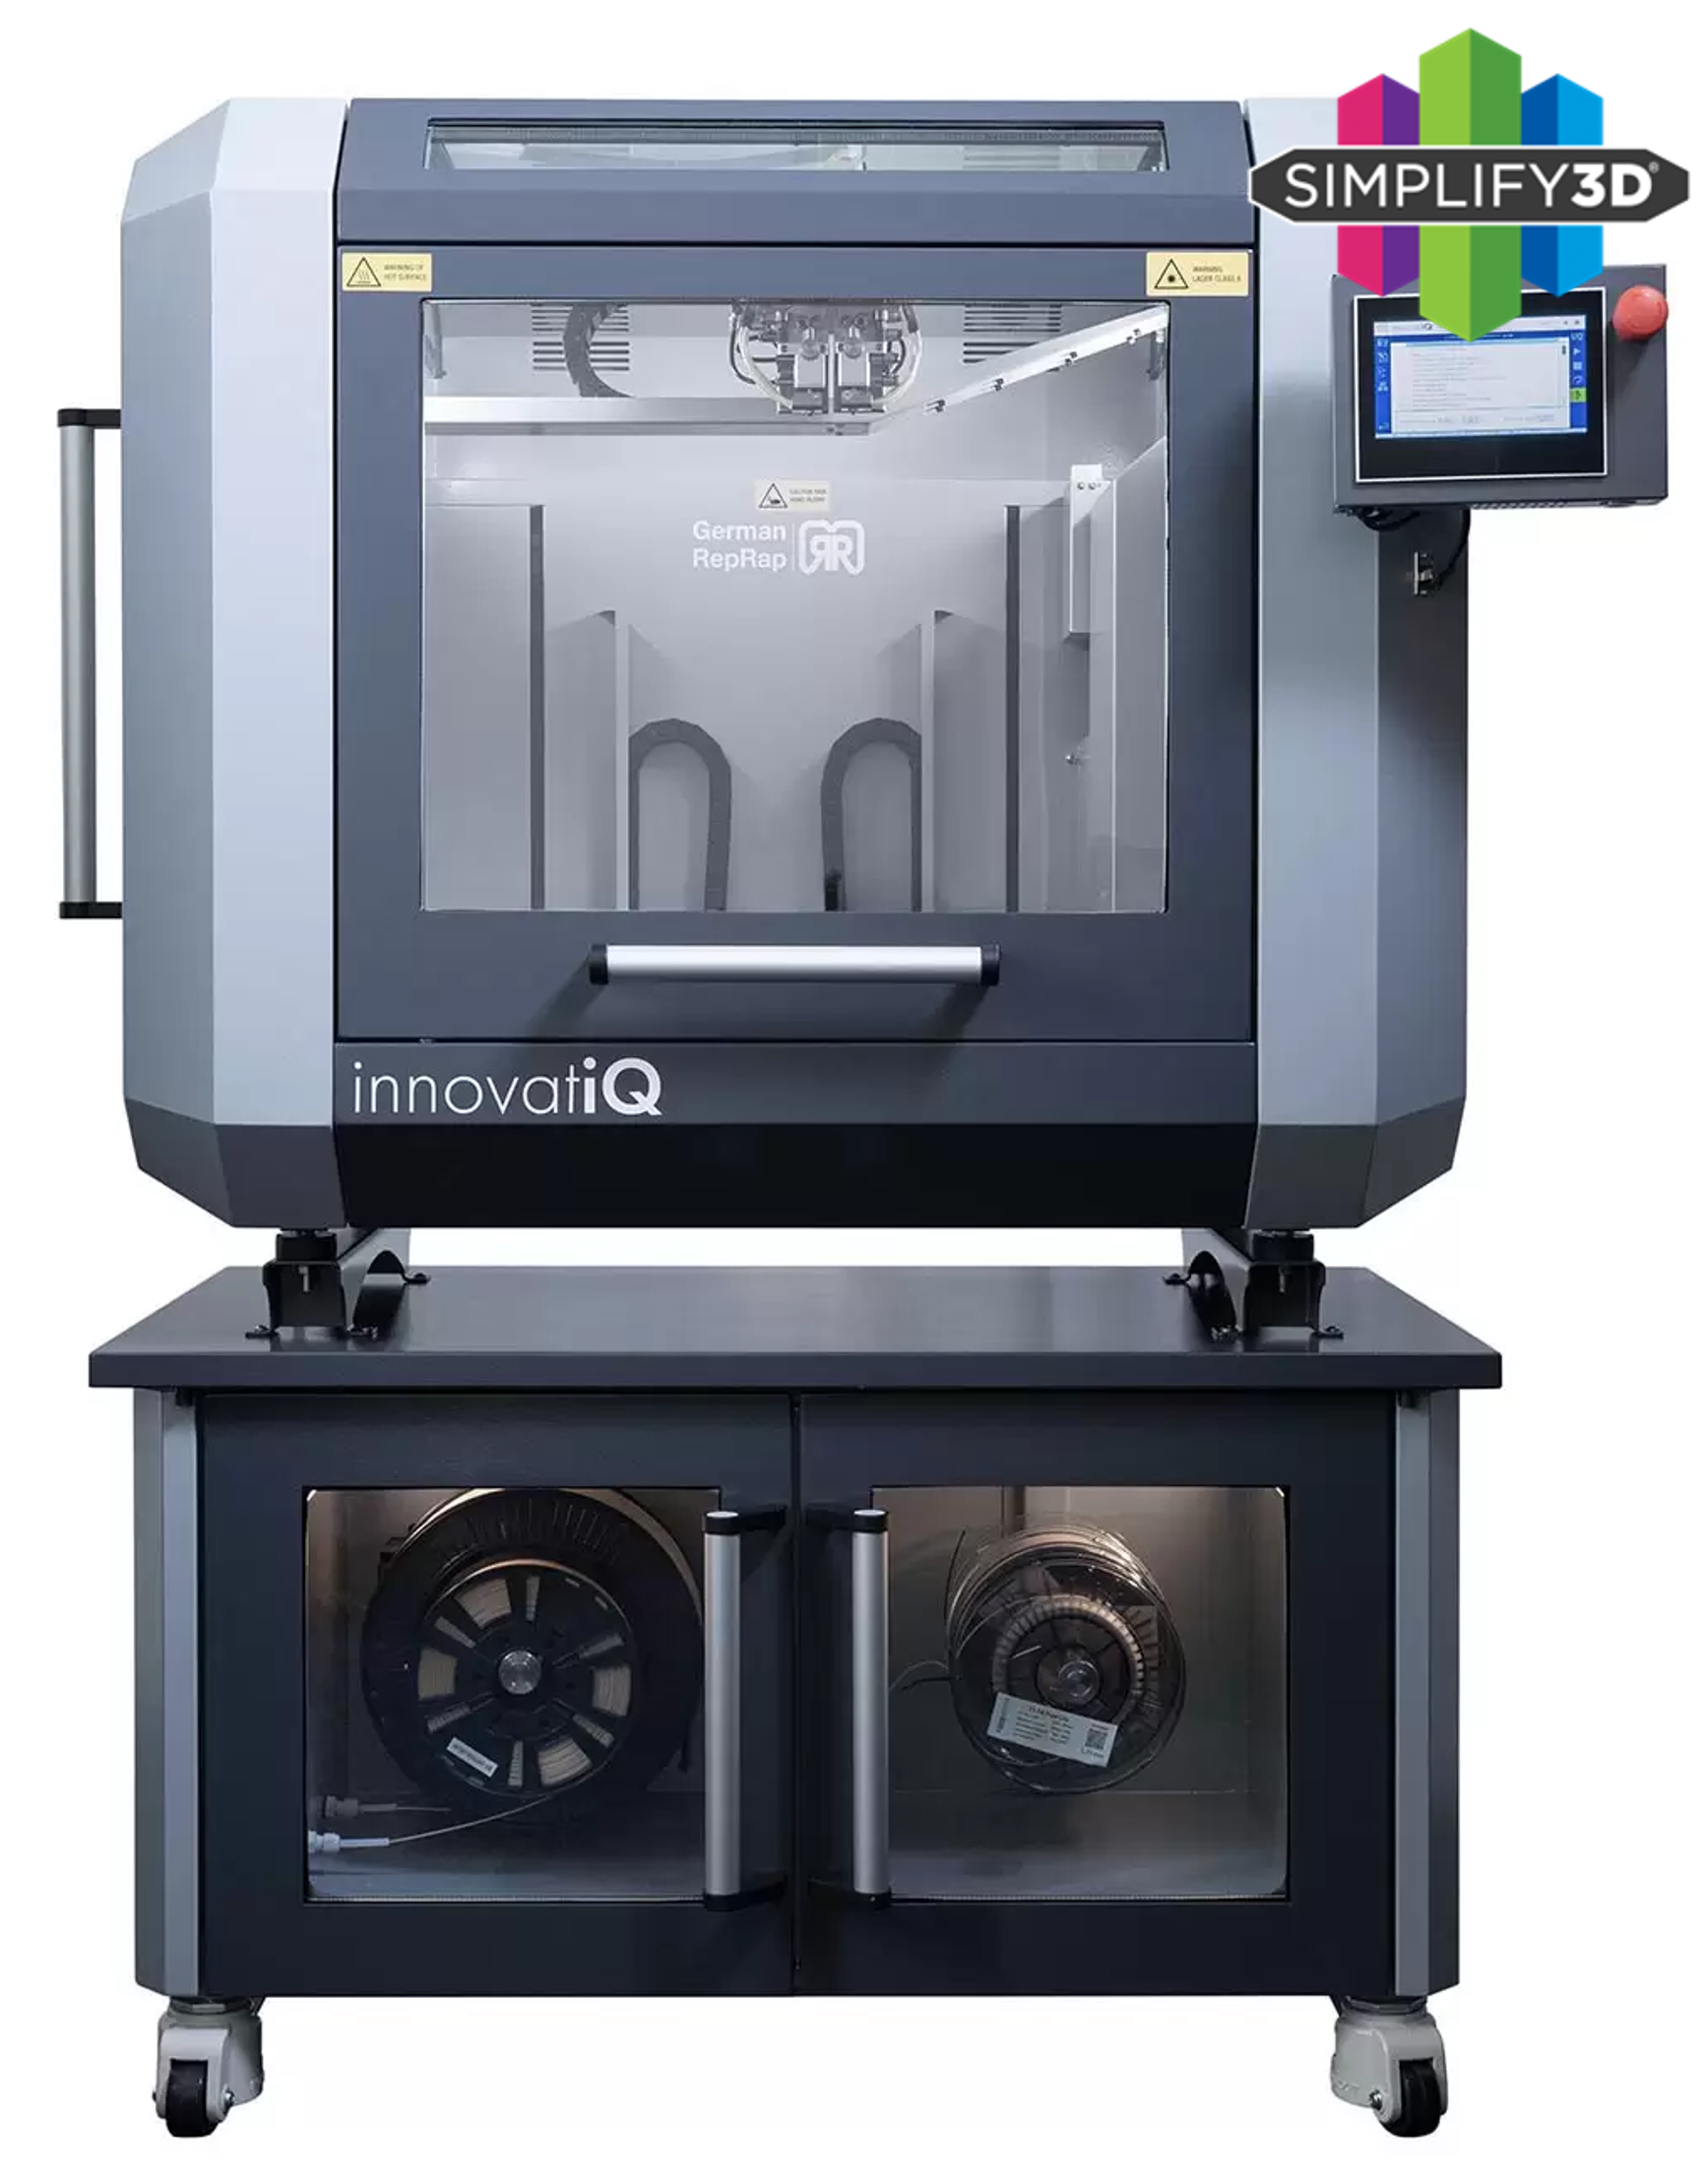 TiQ5 3D Drucker von innovatiQ, Bauraumgrösse 500x400x450mm